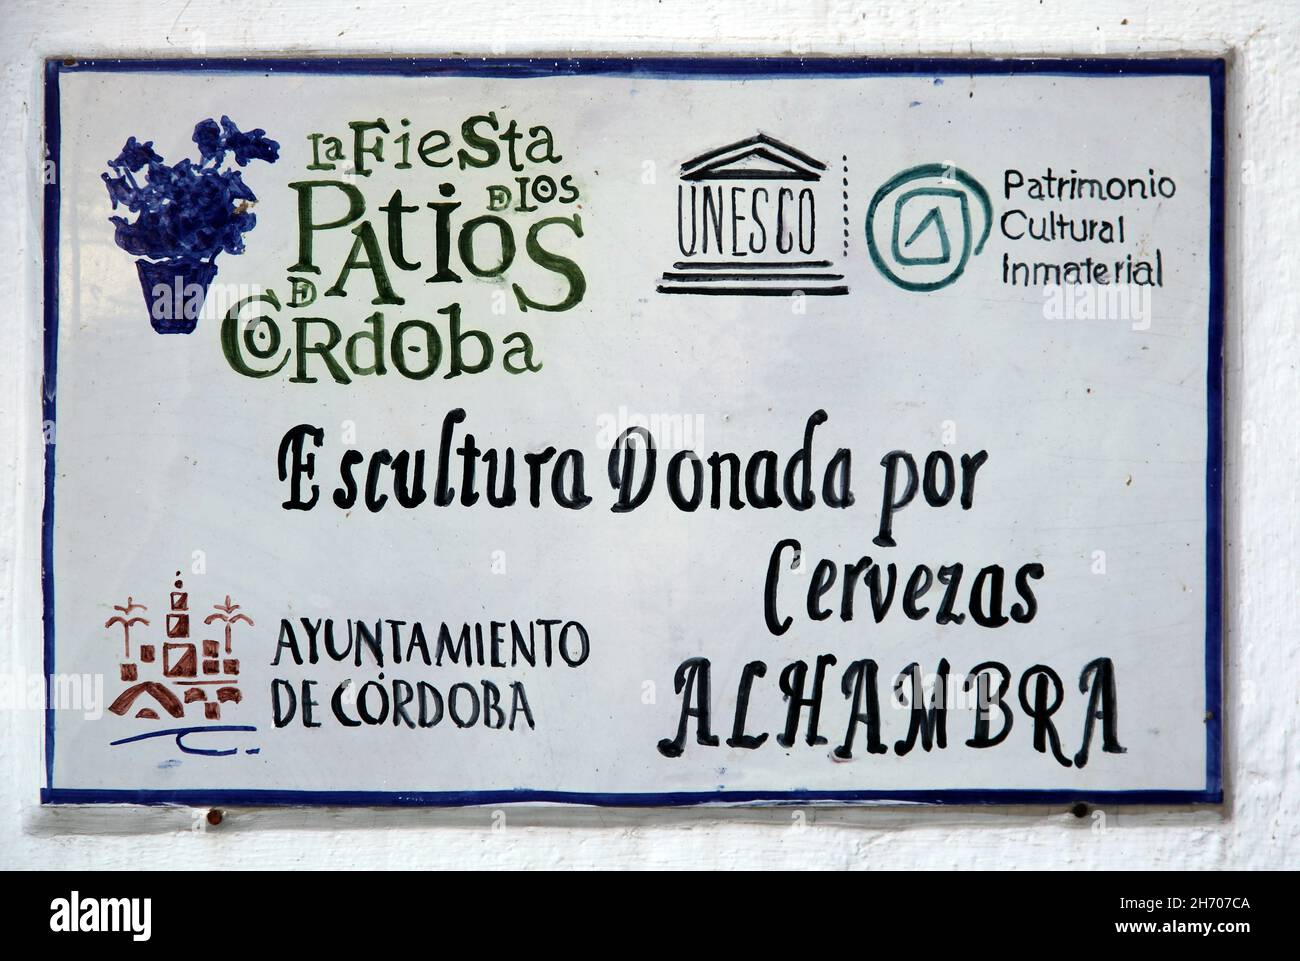 Puerta del Rincón - Monumento a los Patios cordobeses, los patios de Córdoba por el artista José Manuel Belmonte.Córdoba España. Foto de stock